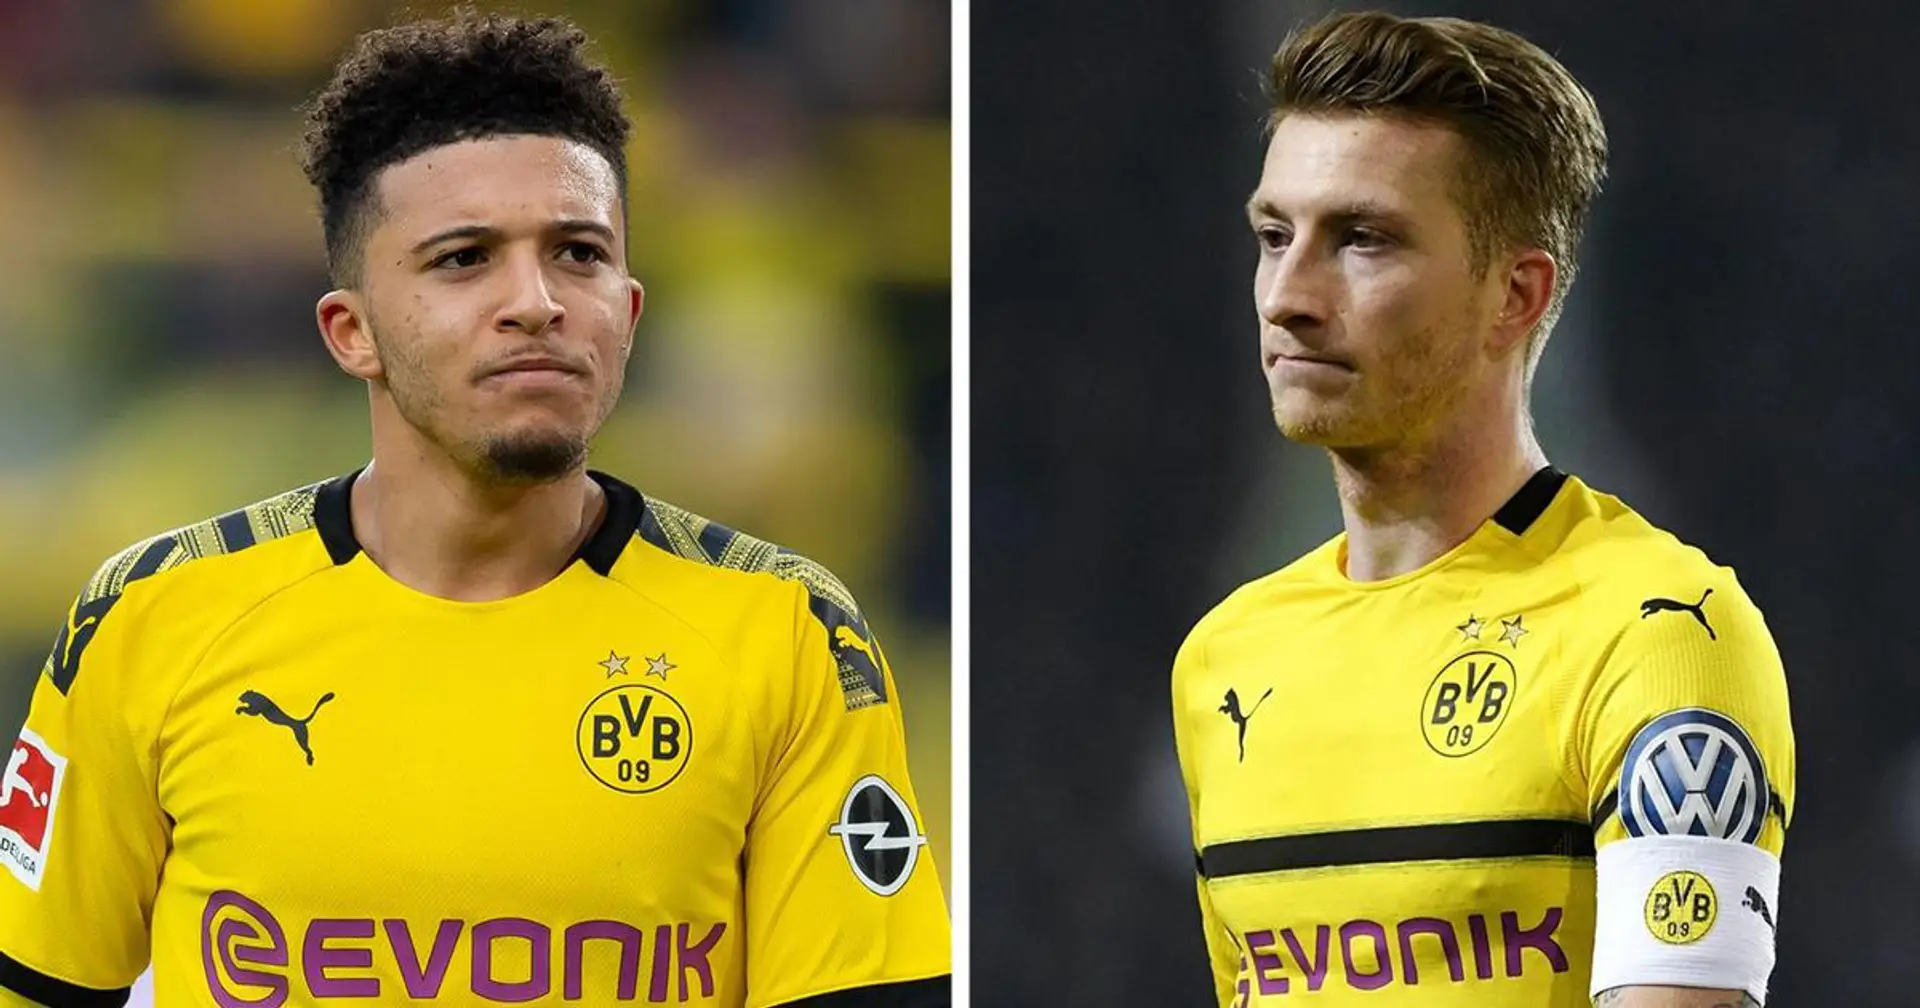 Le capitaine de Dortmund, Reus, affirme que Sancho devrait rester un ou deux ans de plus avant de rejoindre un plus grand club